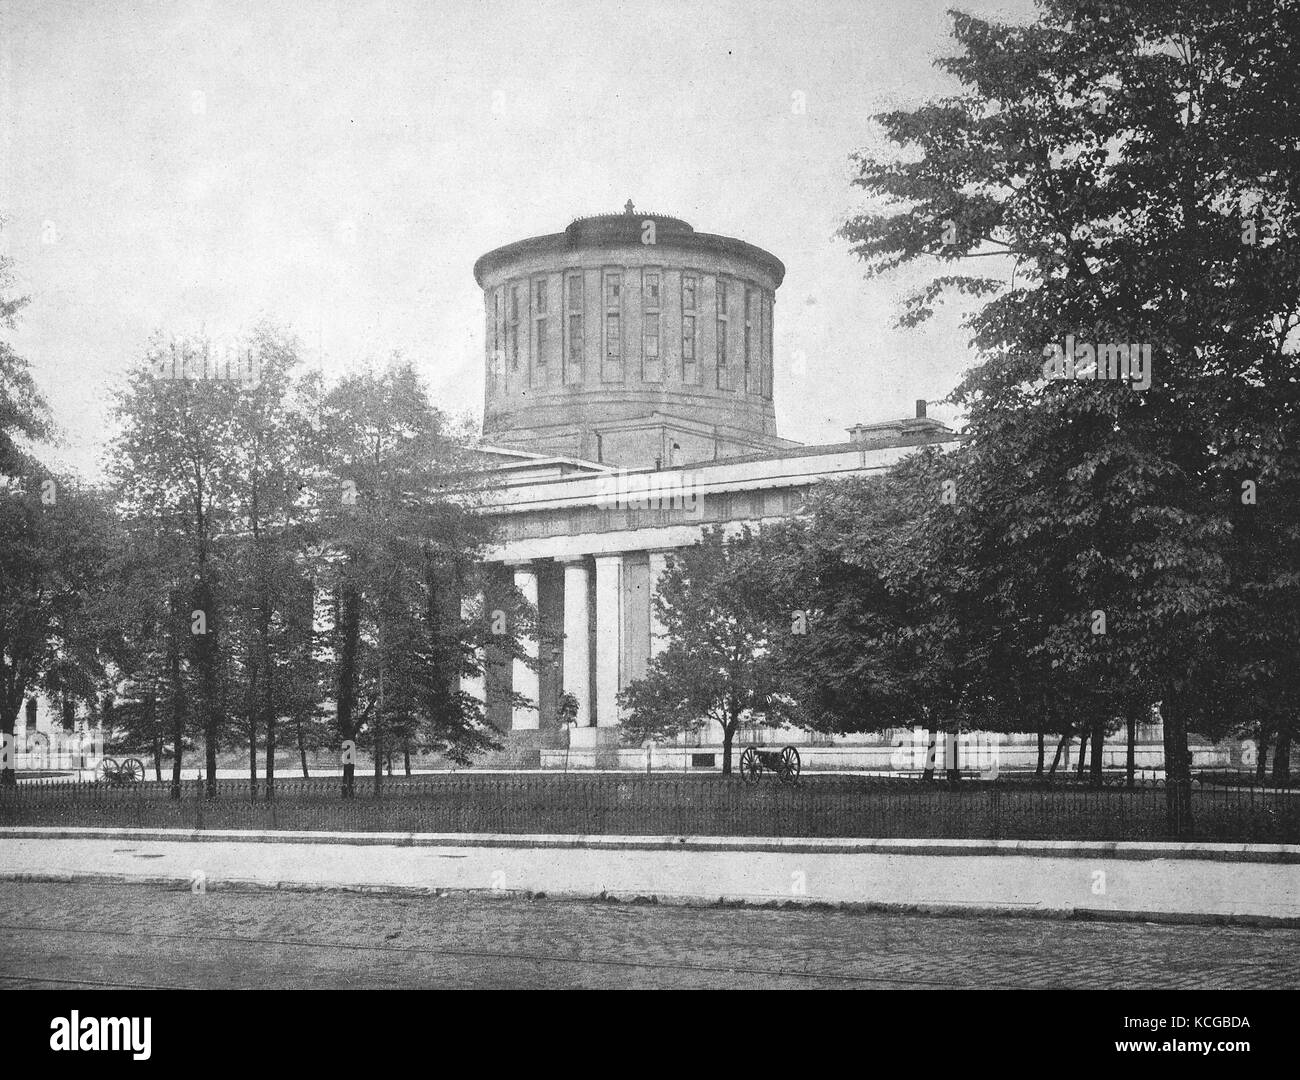 États-unis d'Amérique, Ohio State, le Capitole de Columbus, l'amélioration numérique reproduction d'une photo historique de l'année 1899 (estimé) Banque D'Images